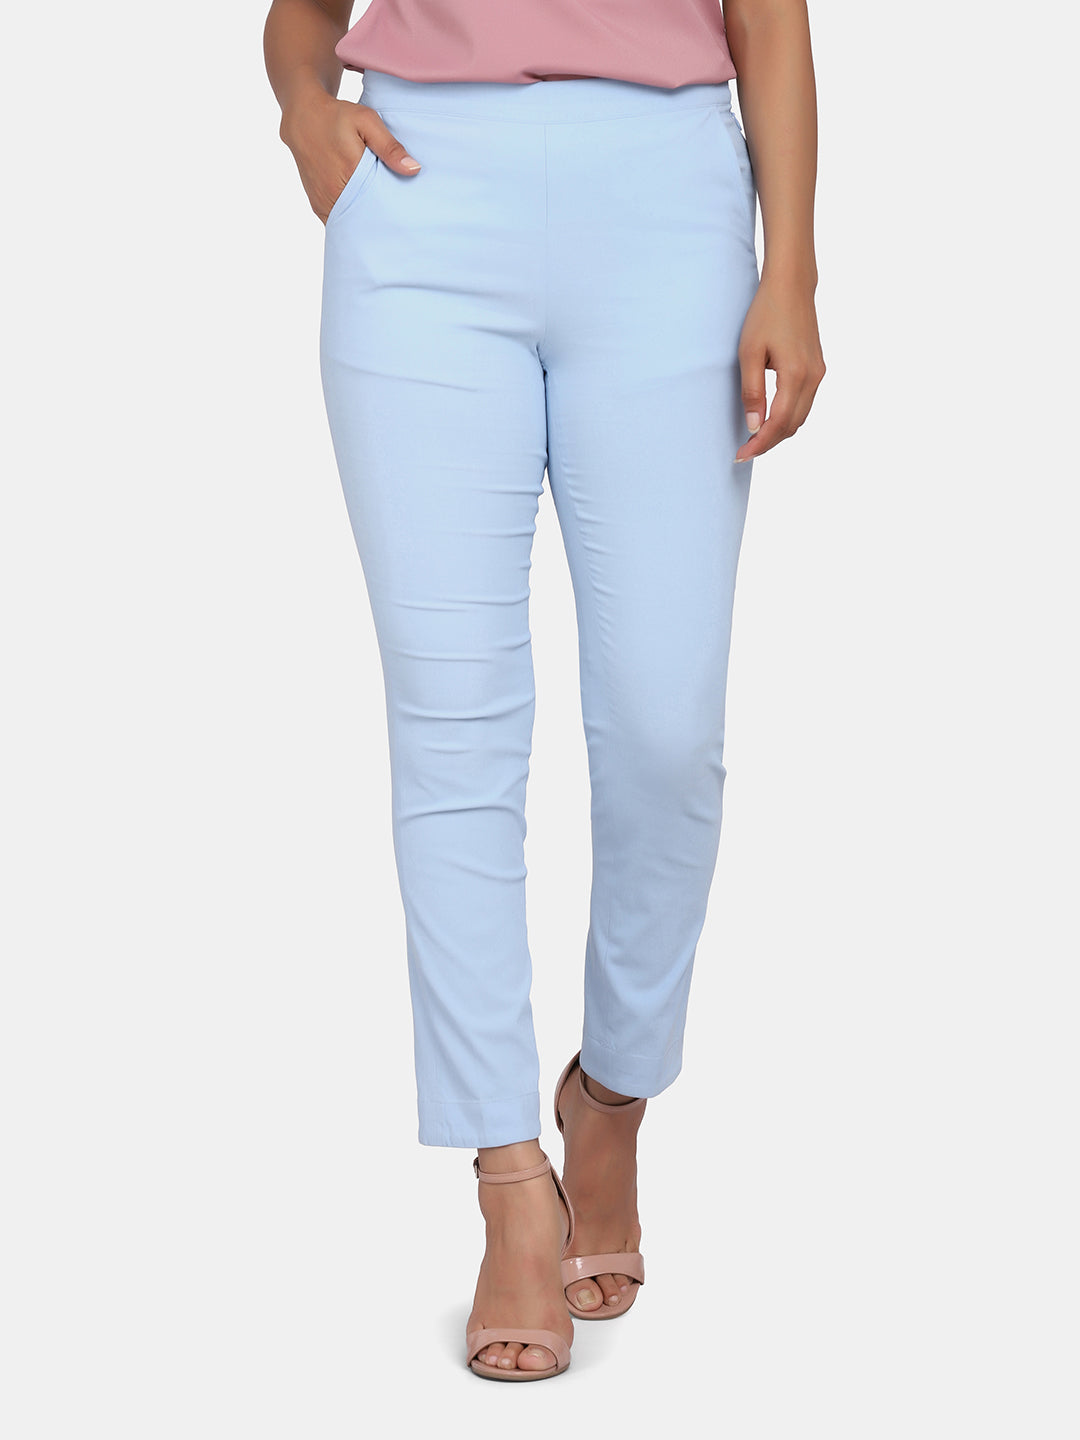 Women's Slim Fit Trousers - Sky Blue